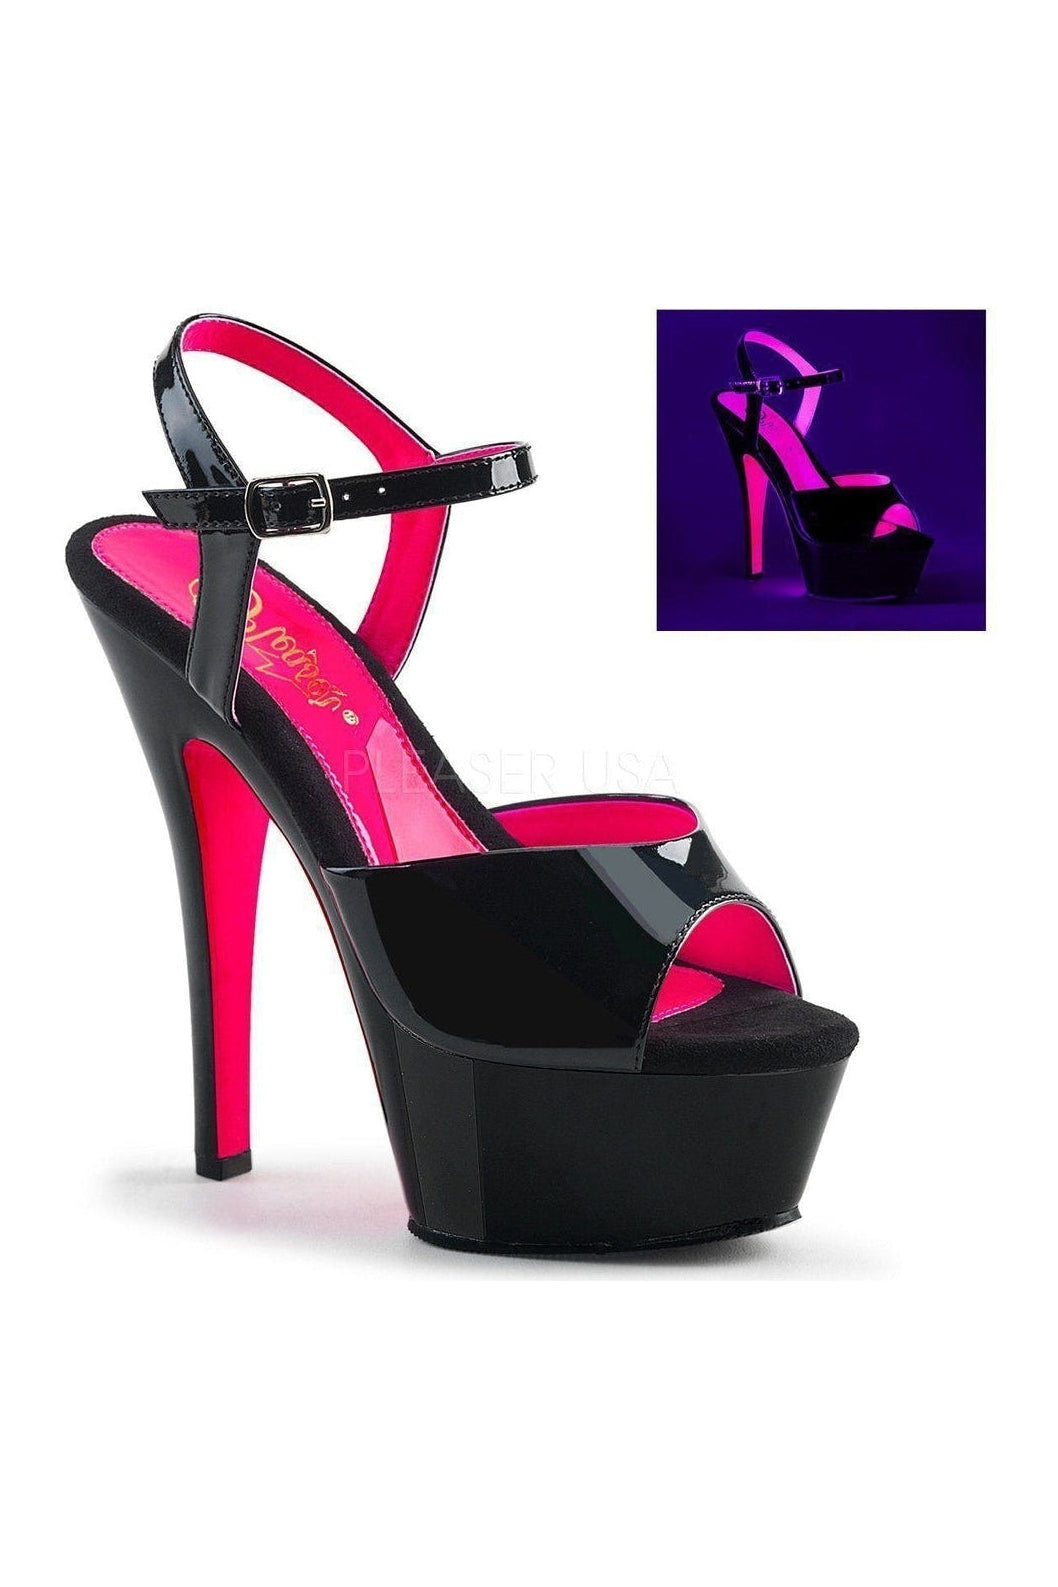 KISS-209TT Platform Sandal | Black Patent-Pleaser-Black-Sandals-SEXYSHOES.COM